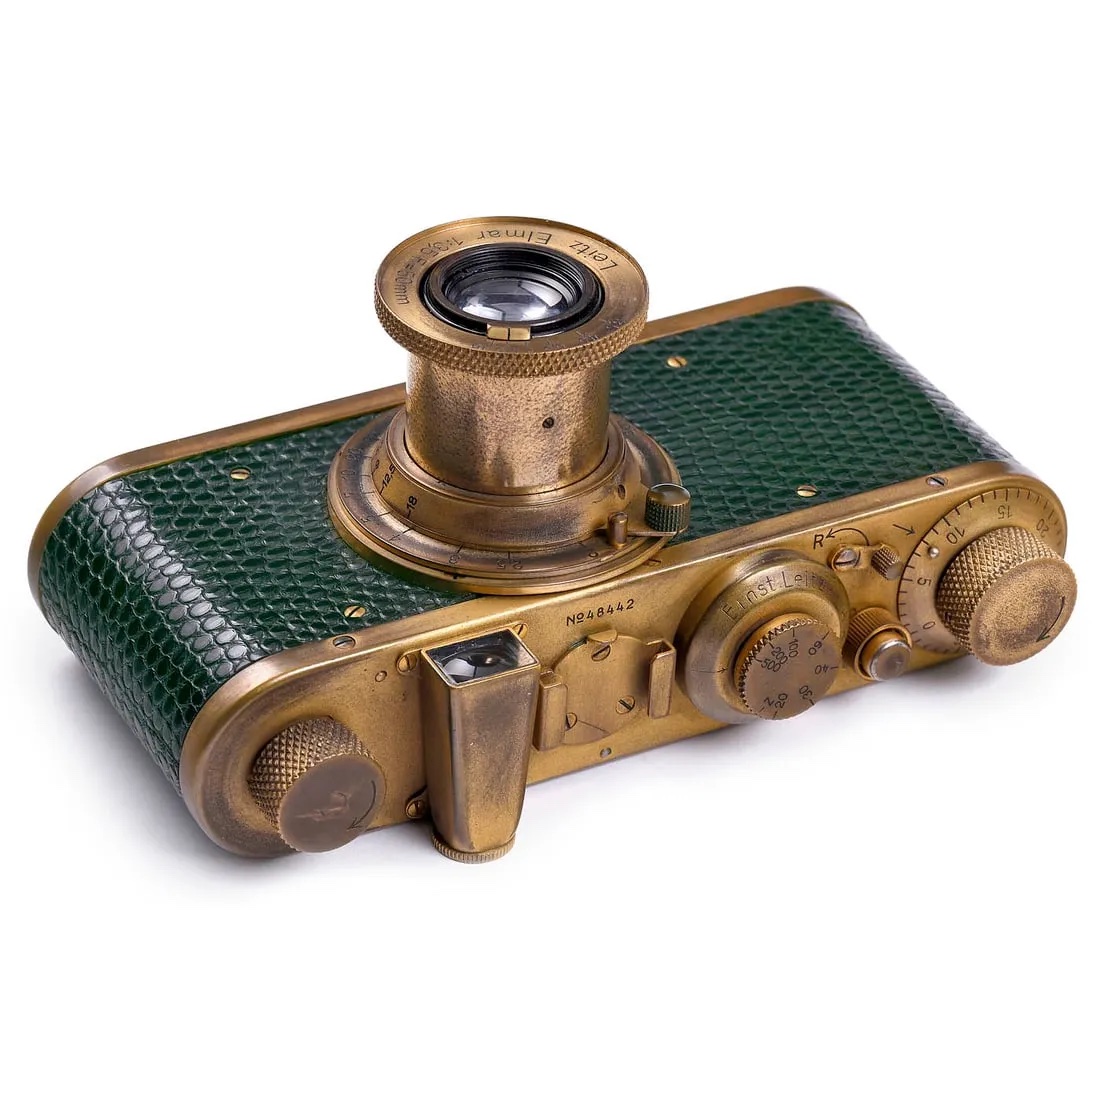 Leica I (C ) 'Luxus' camera, estimated at €18,000-€24,000 ($19,555-$26,075) at Breker.